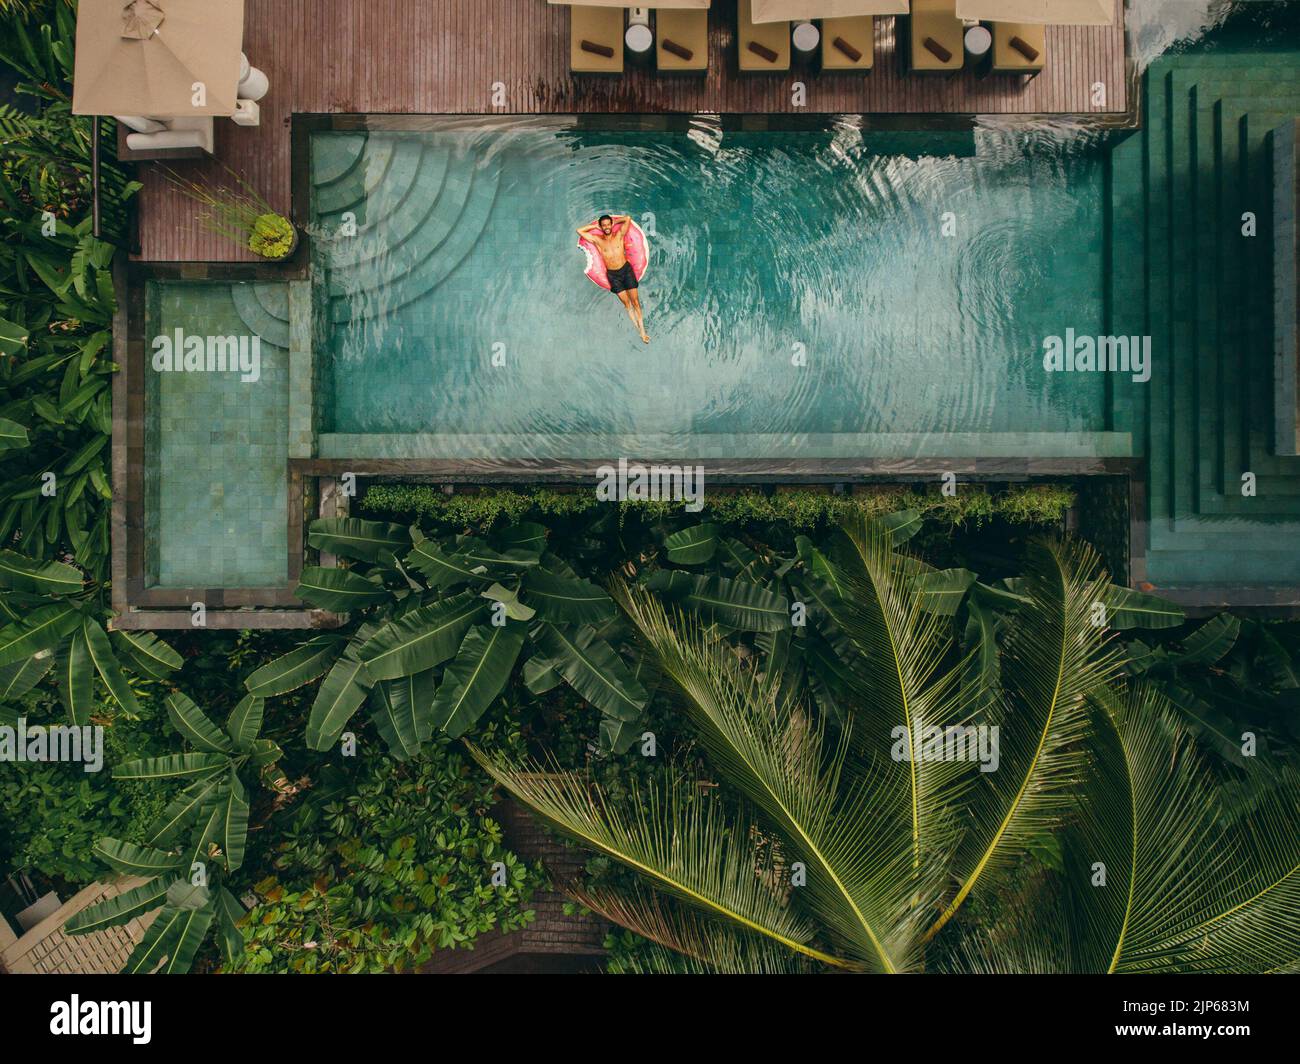 Foto aérea del joven descansando en la piscina del complejo. Hombre en el anillo inflable de la piscina. Foto de stock